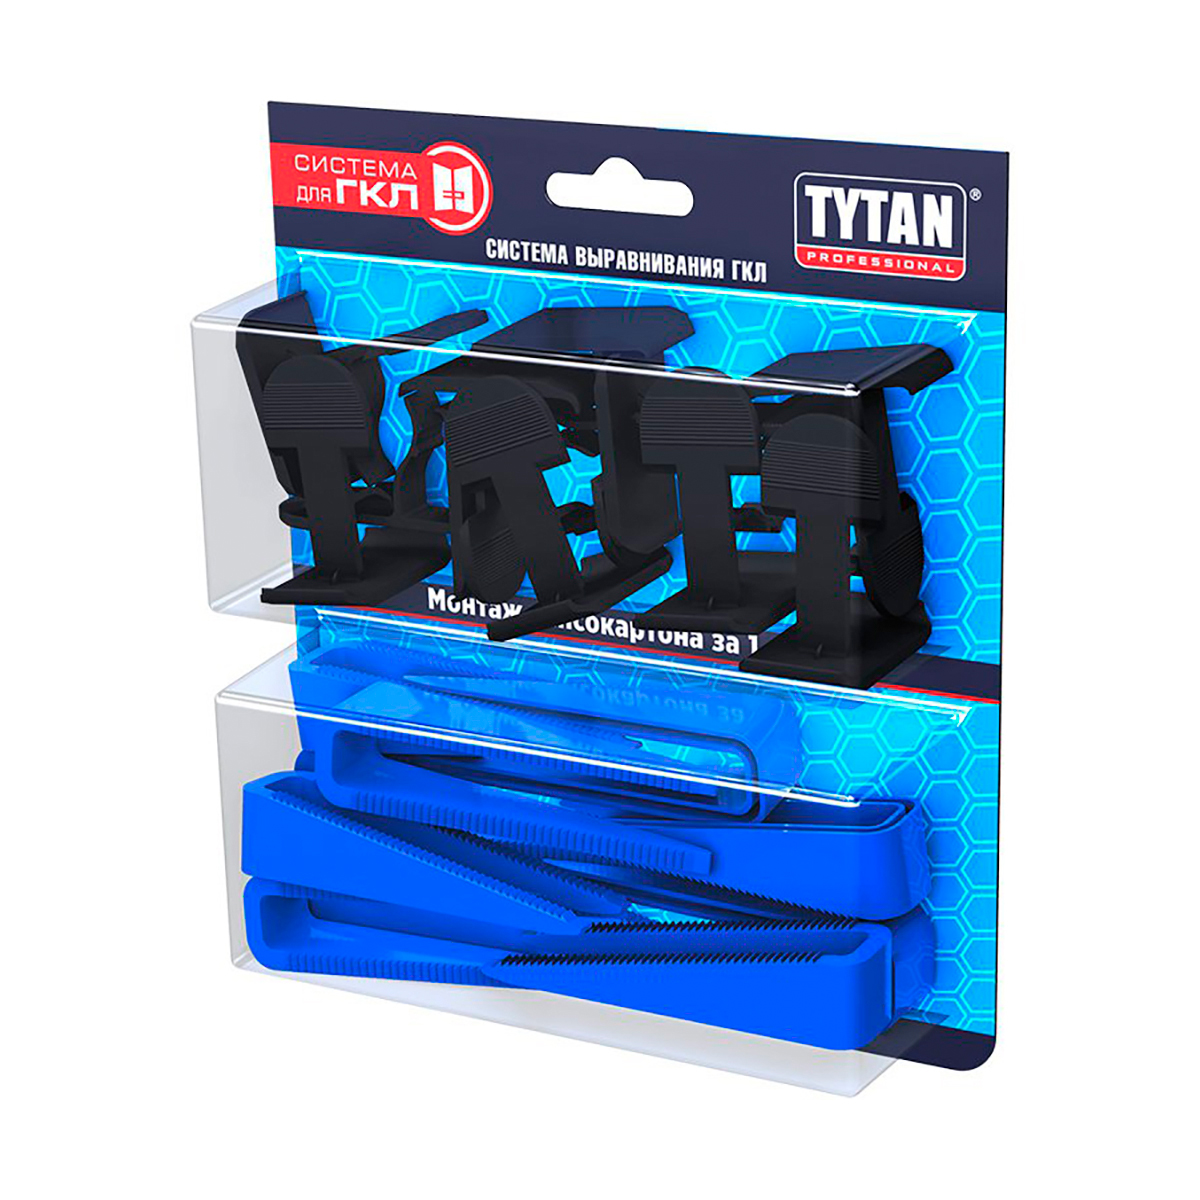 Система выравнивания гипсокартона Tytan Professional, клинья 30 шт + клипсы 30 шт клипсы